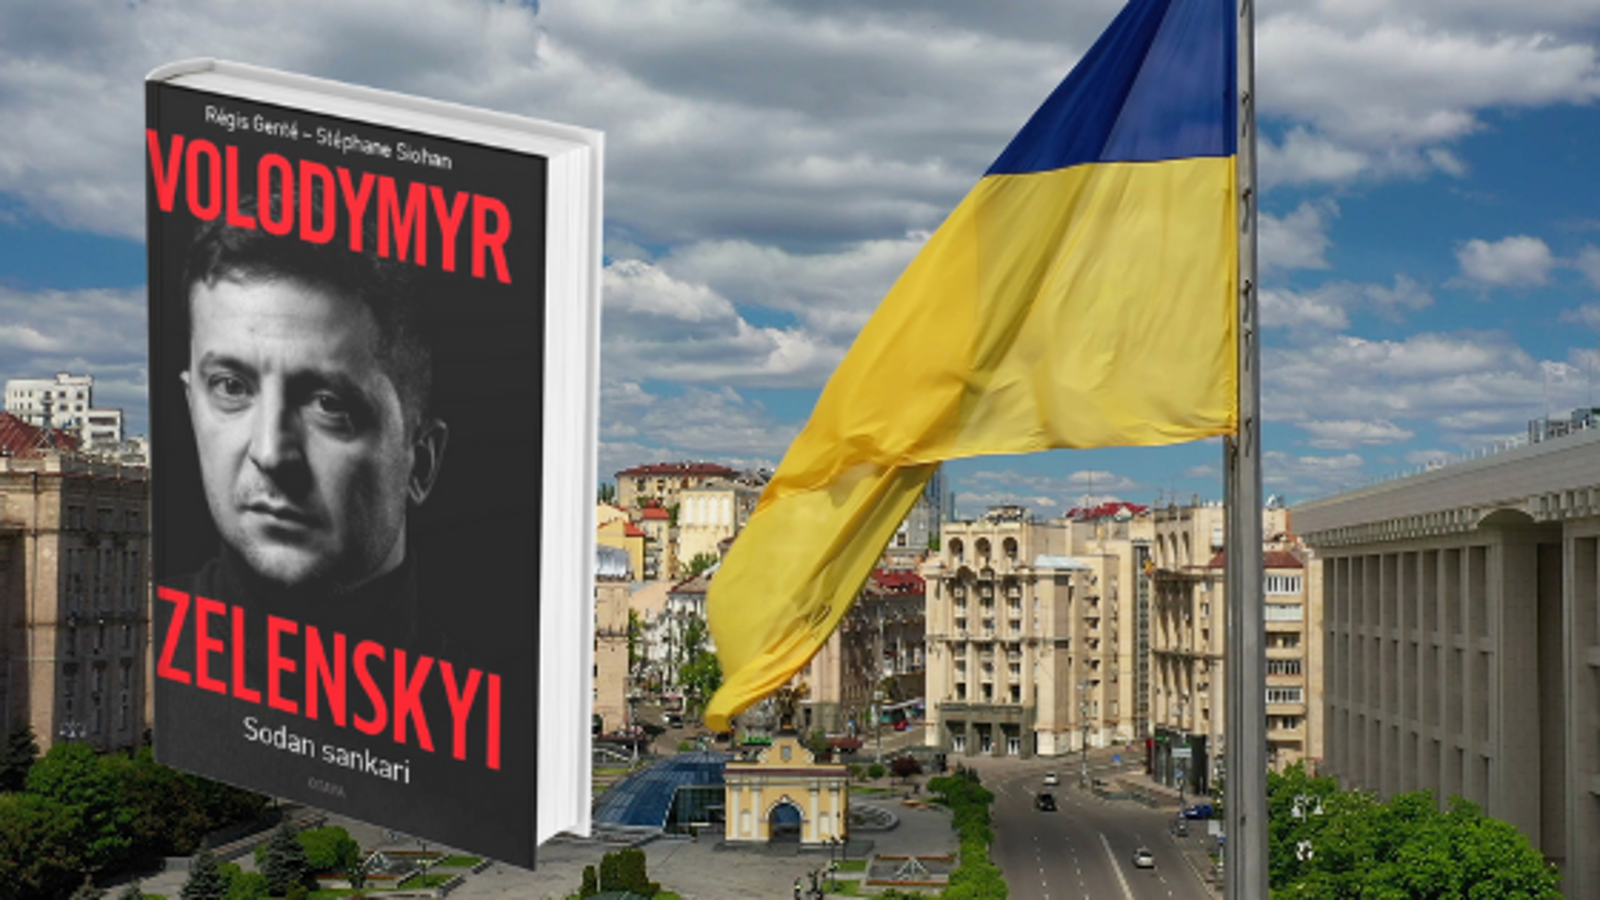 Kuvassa on Zelenskysta kertovan kirjan kansi, jossa on hänen kasvokuvansa kannessa. Oikealla on Ukrainan lippu ja taustalla kaupunkimaisemaa.